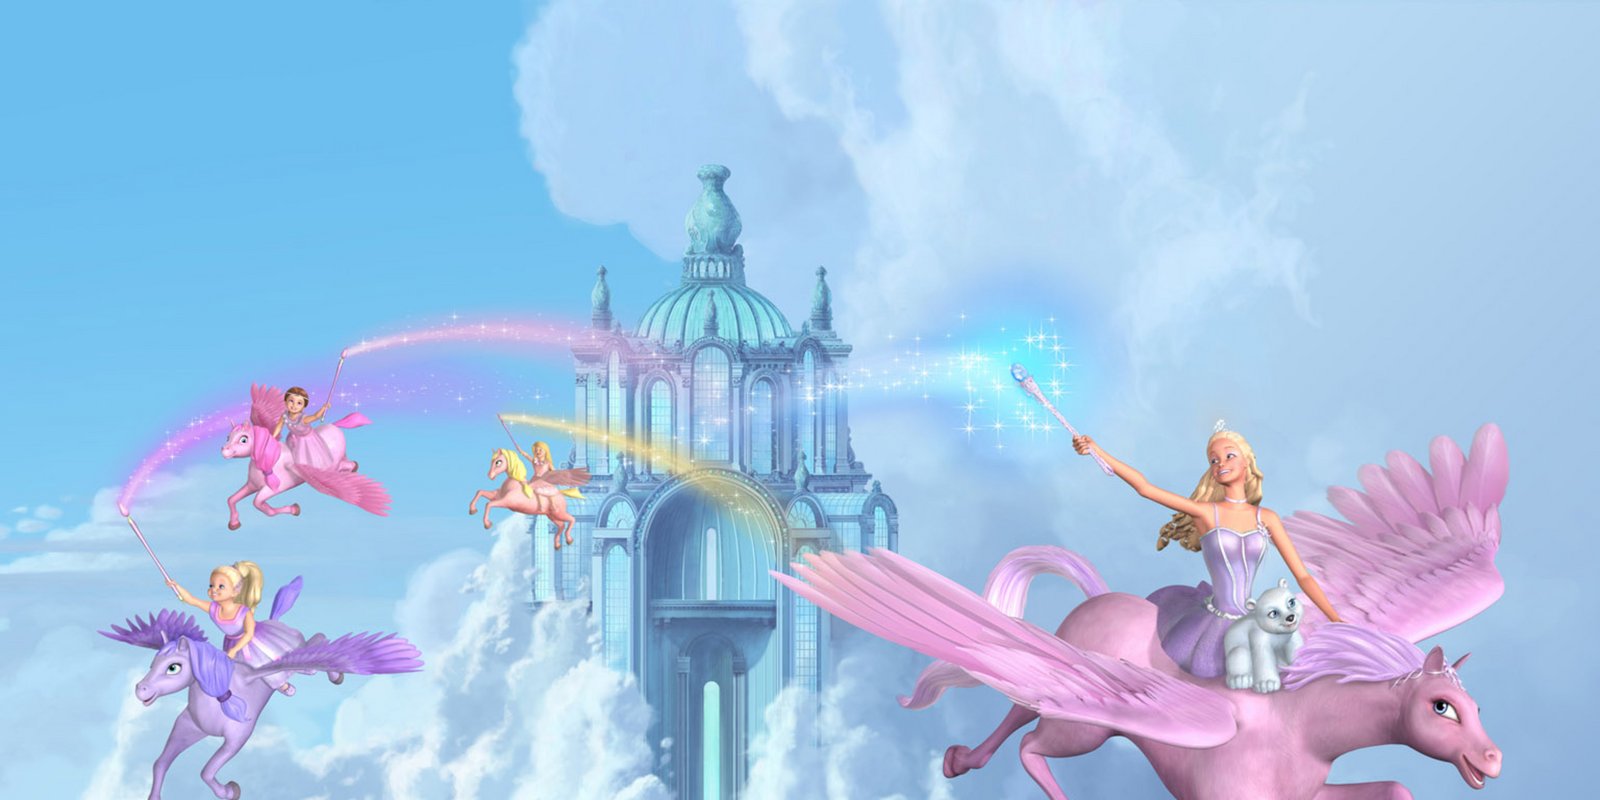 Barbie und der geheimnisvolle Pegasus